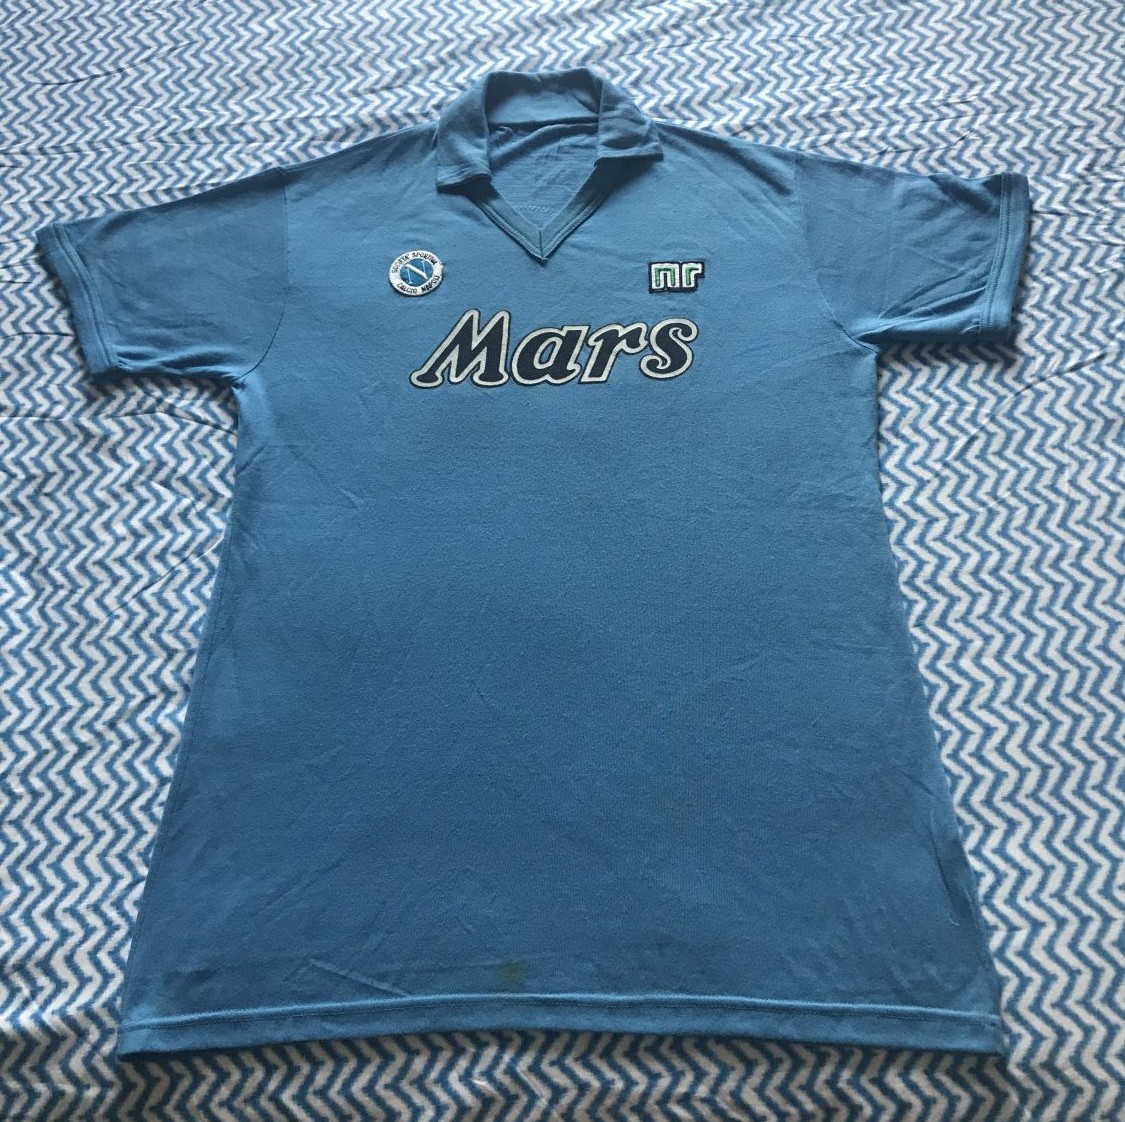 Napoli Home football shirt 1988 - 1989.